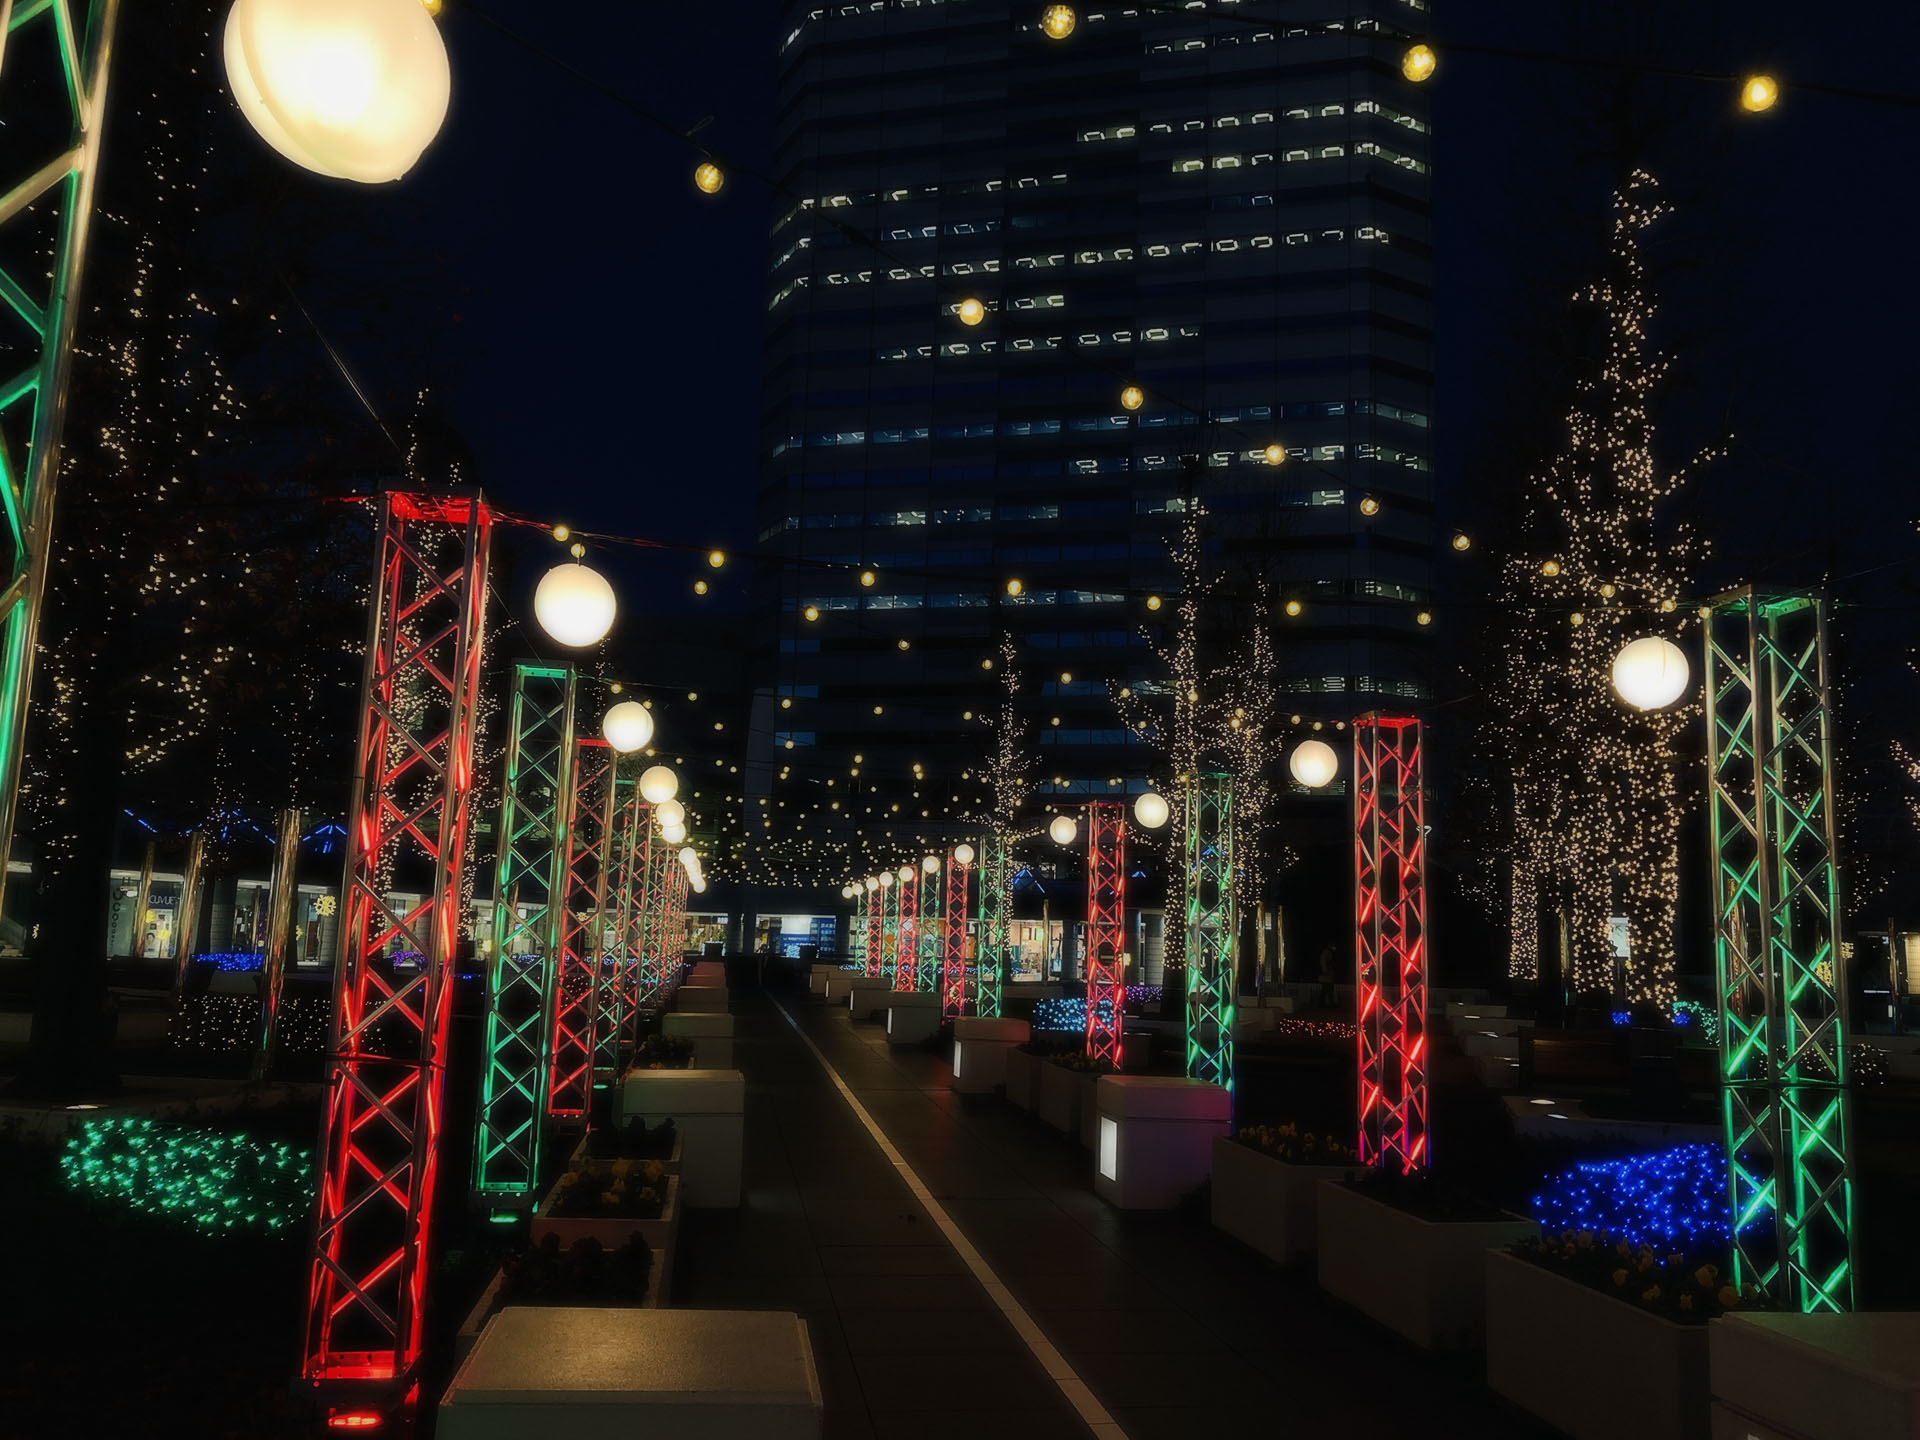 【随時更新】千葉県内の駅前に輝くイルミネーション2021-22